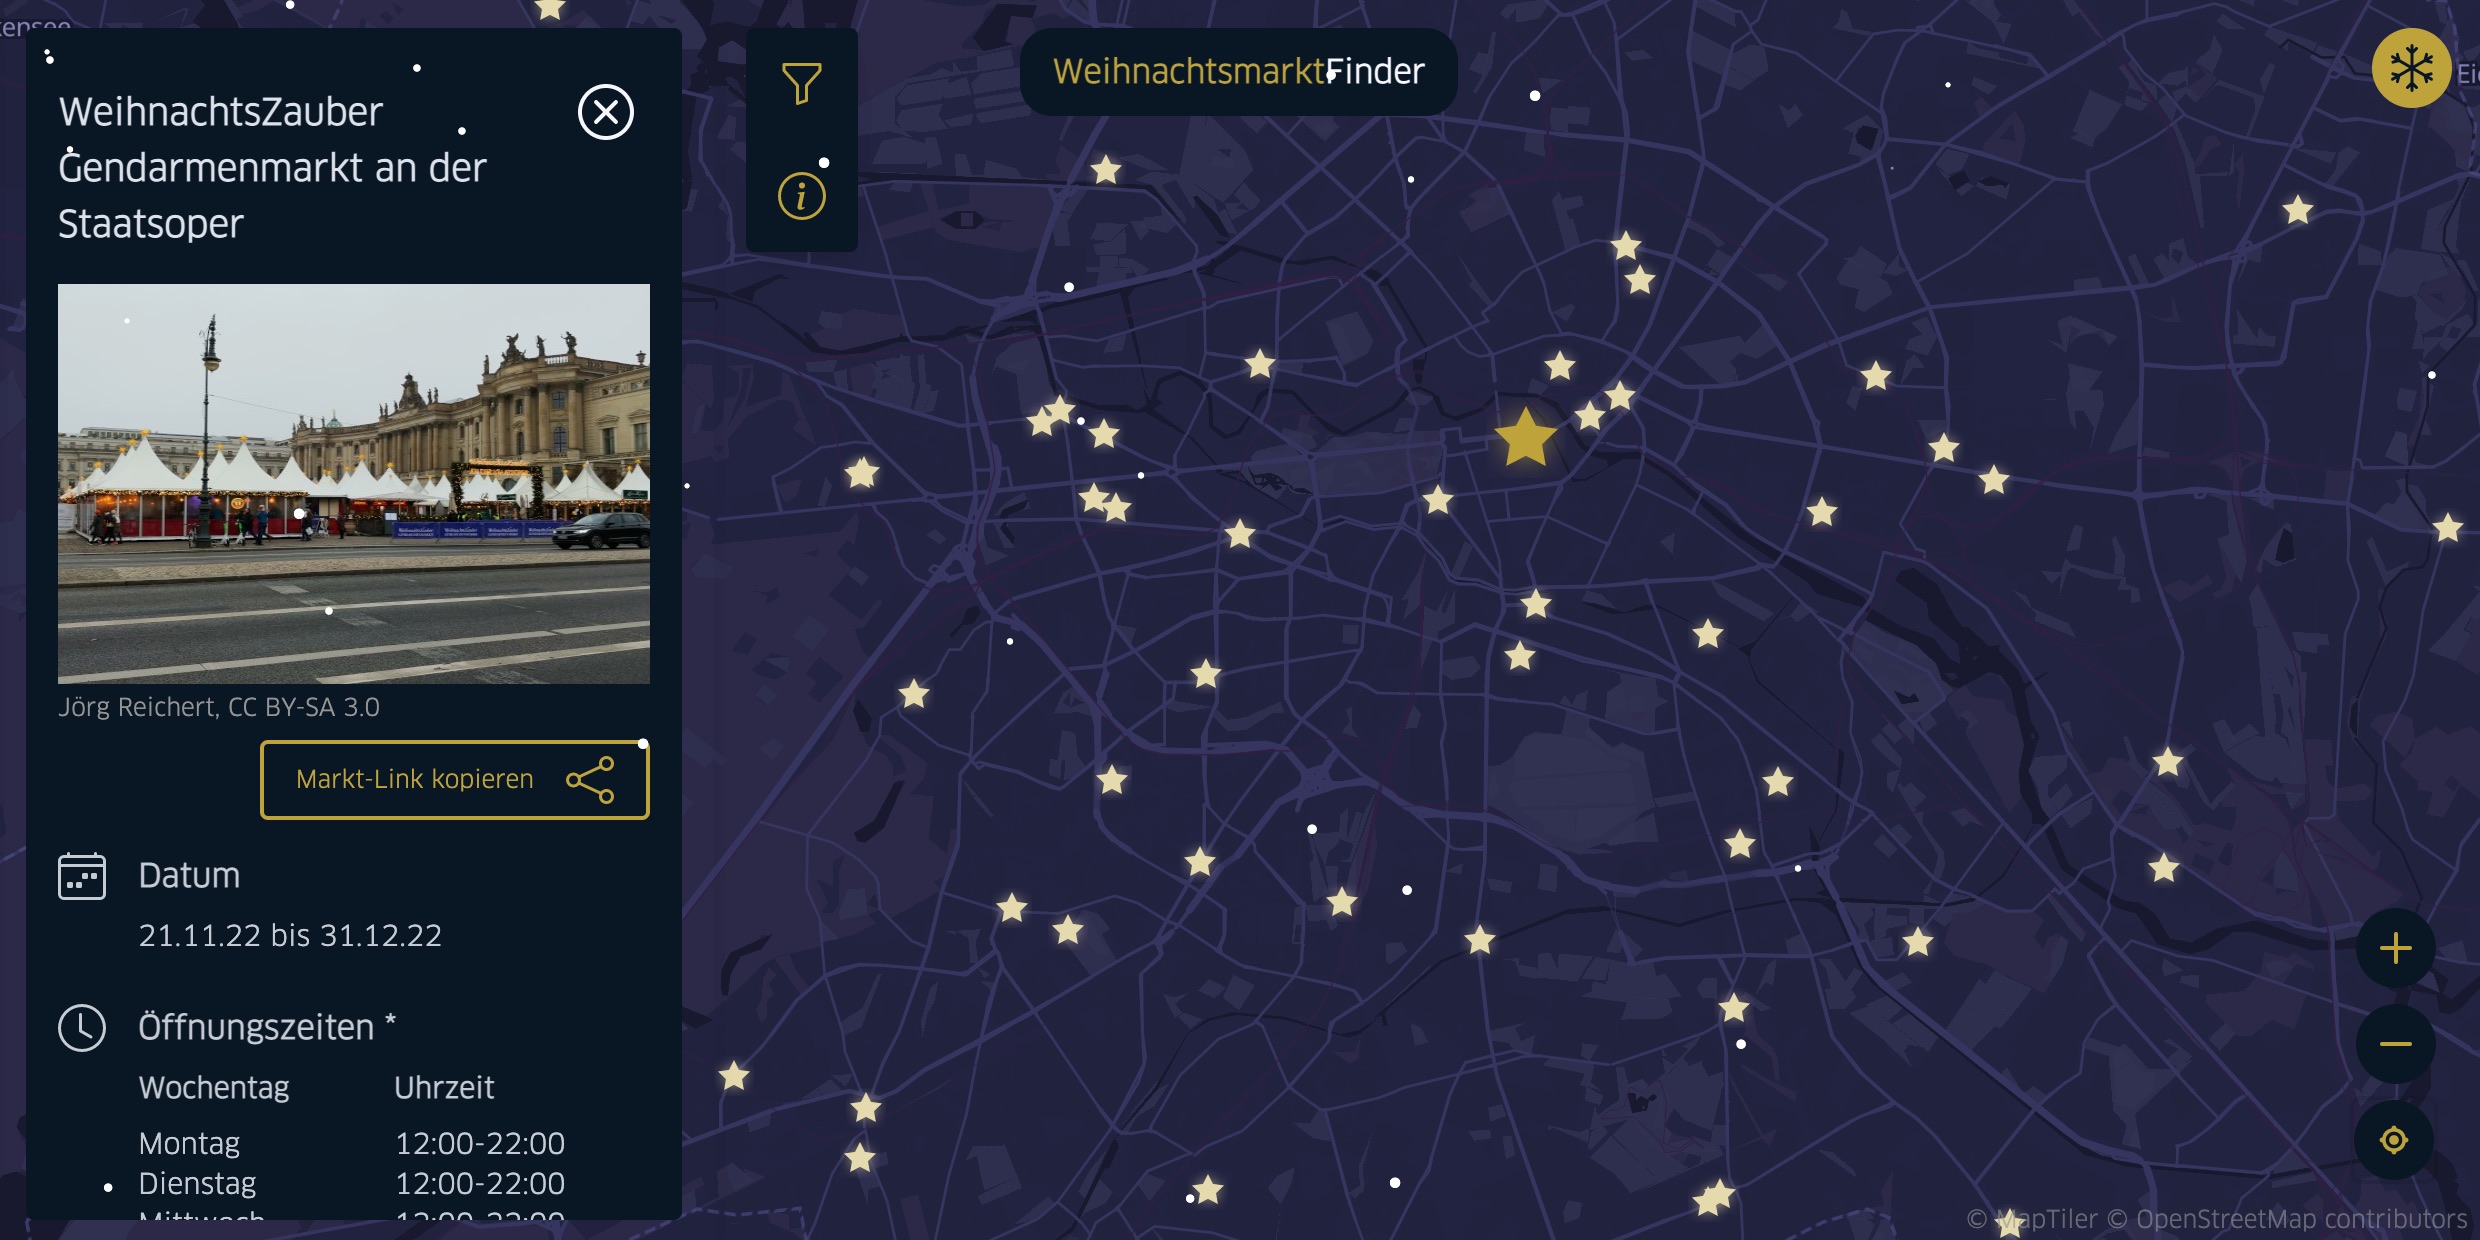 Ein Screenshot des WeihnachtsmarktFinders, auf dem auf einer Karte von Berlin verschiedene Weihnachtsmärkte angezeigt sind. Verschiedene Details zum Weichnachtsmarkt am Gendarmenmarkt sind angezeigt.